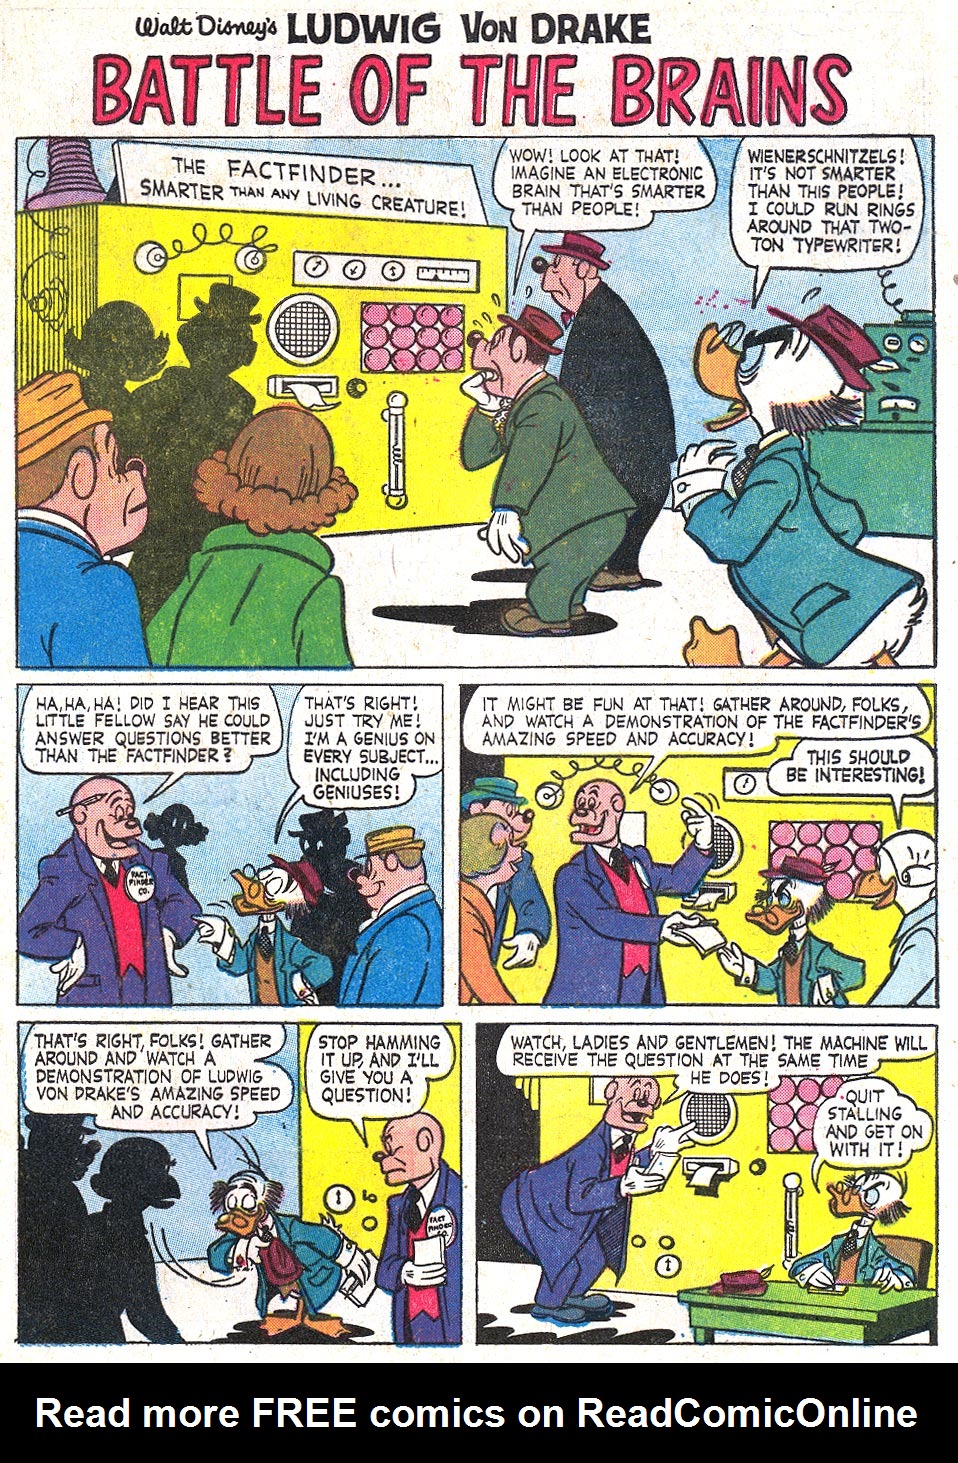 Read online Walt Disney's Ludwig Von Drake comic -  Issue #2 - 9